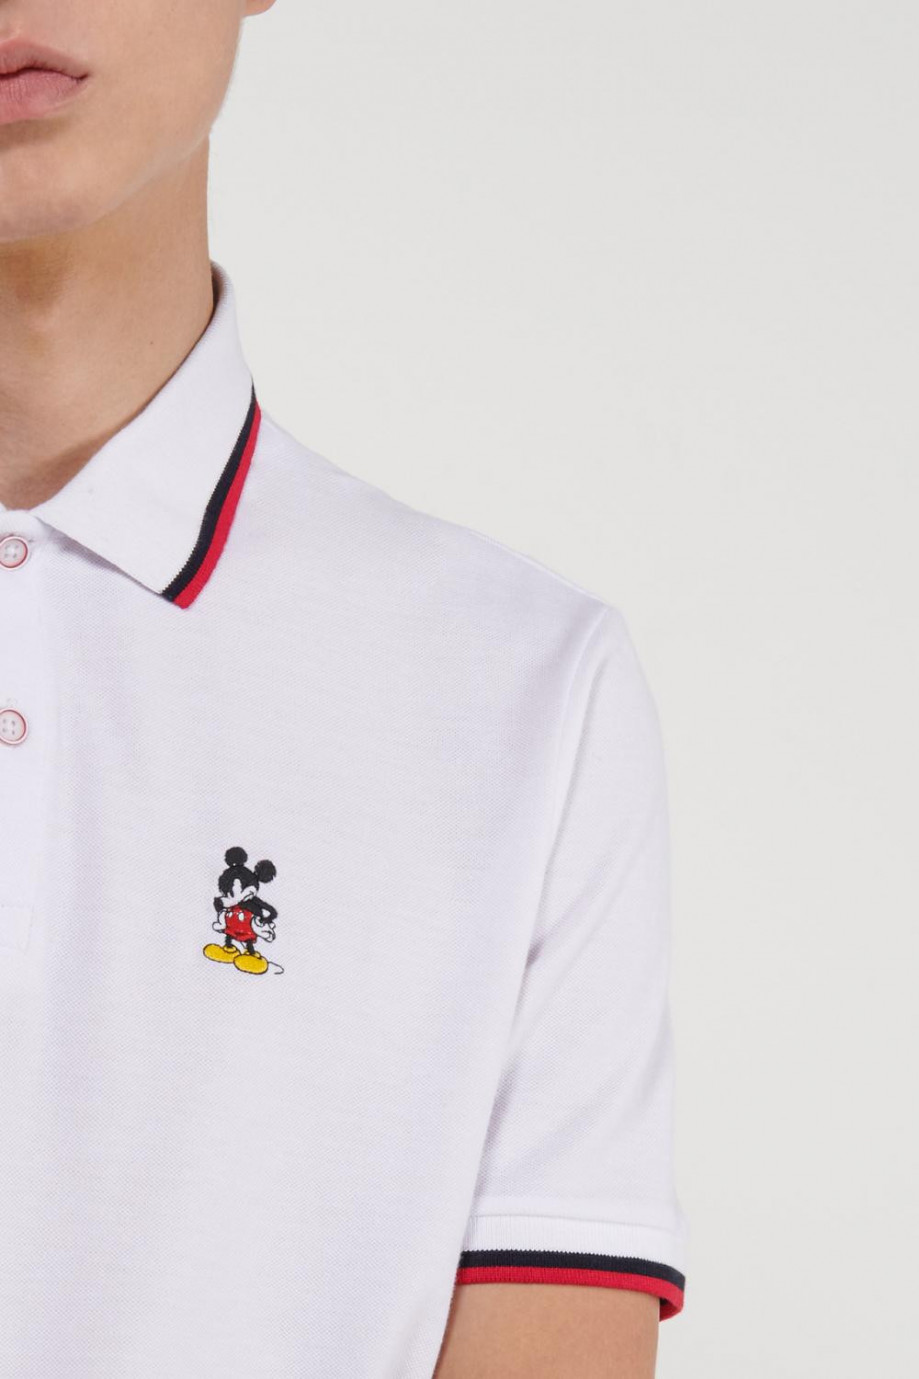 Camiseta Polo, con bordado en frente de Mickey, puños y cuello tejidos.